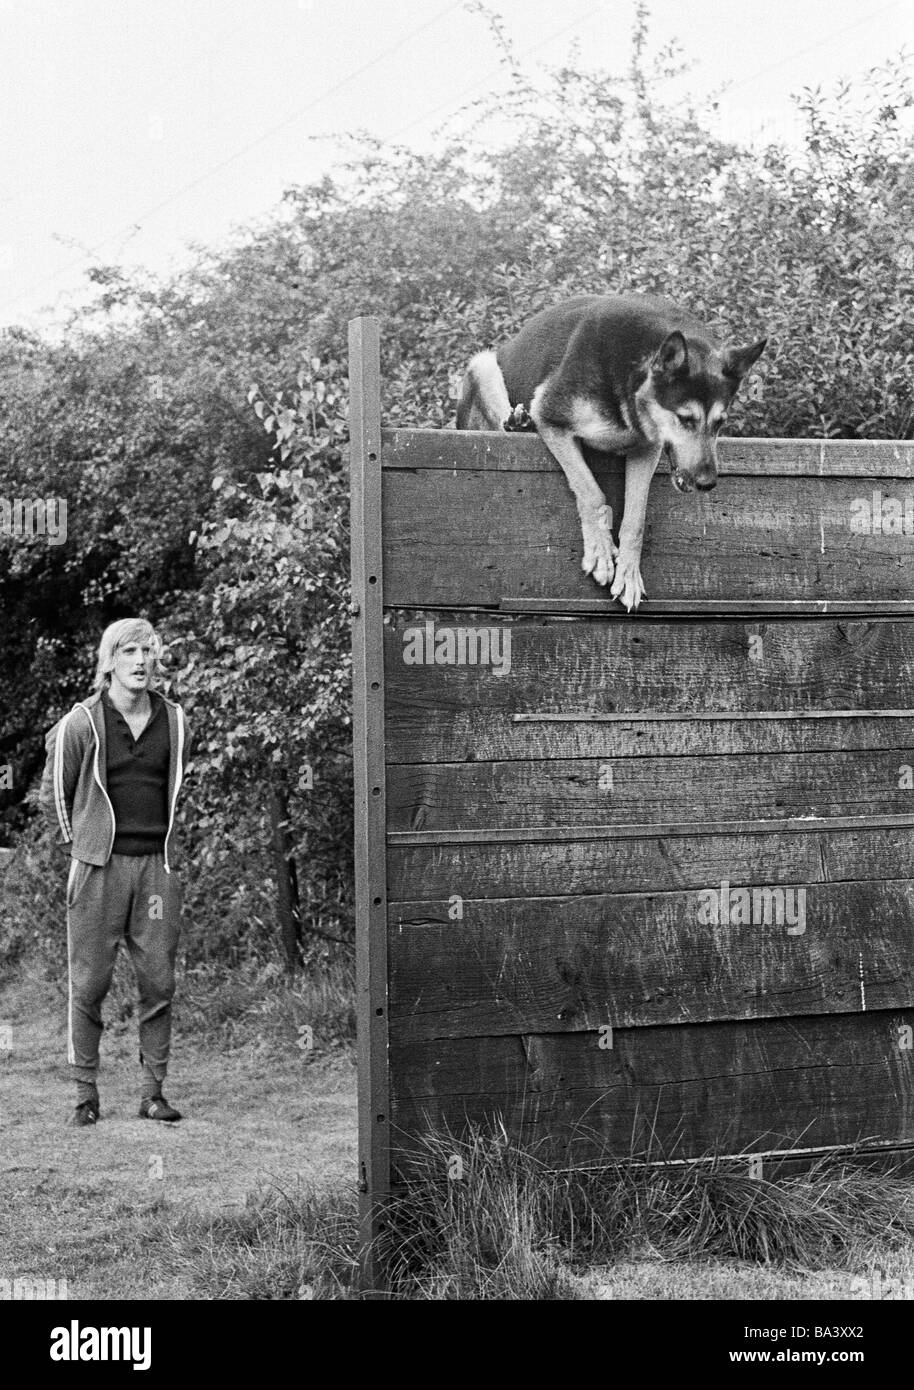 Années 70, photo en noir et blanc, des sports, de l'homme et des animaux, chiens de sport, Championnat Local 1972 pour les chiens de travail, formateur spures sur son berger qui saute par-dessus une haute clôture en bois, l'homme, âgé de 20 à 30 ans, D-Bottrop, Ruhr, Rhénanie du Nord-Westphalie Banque D'Images